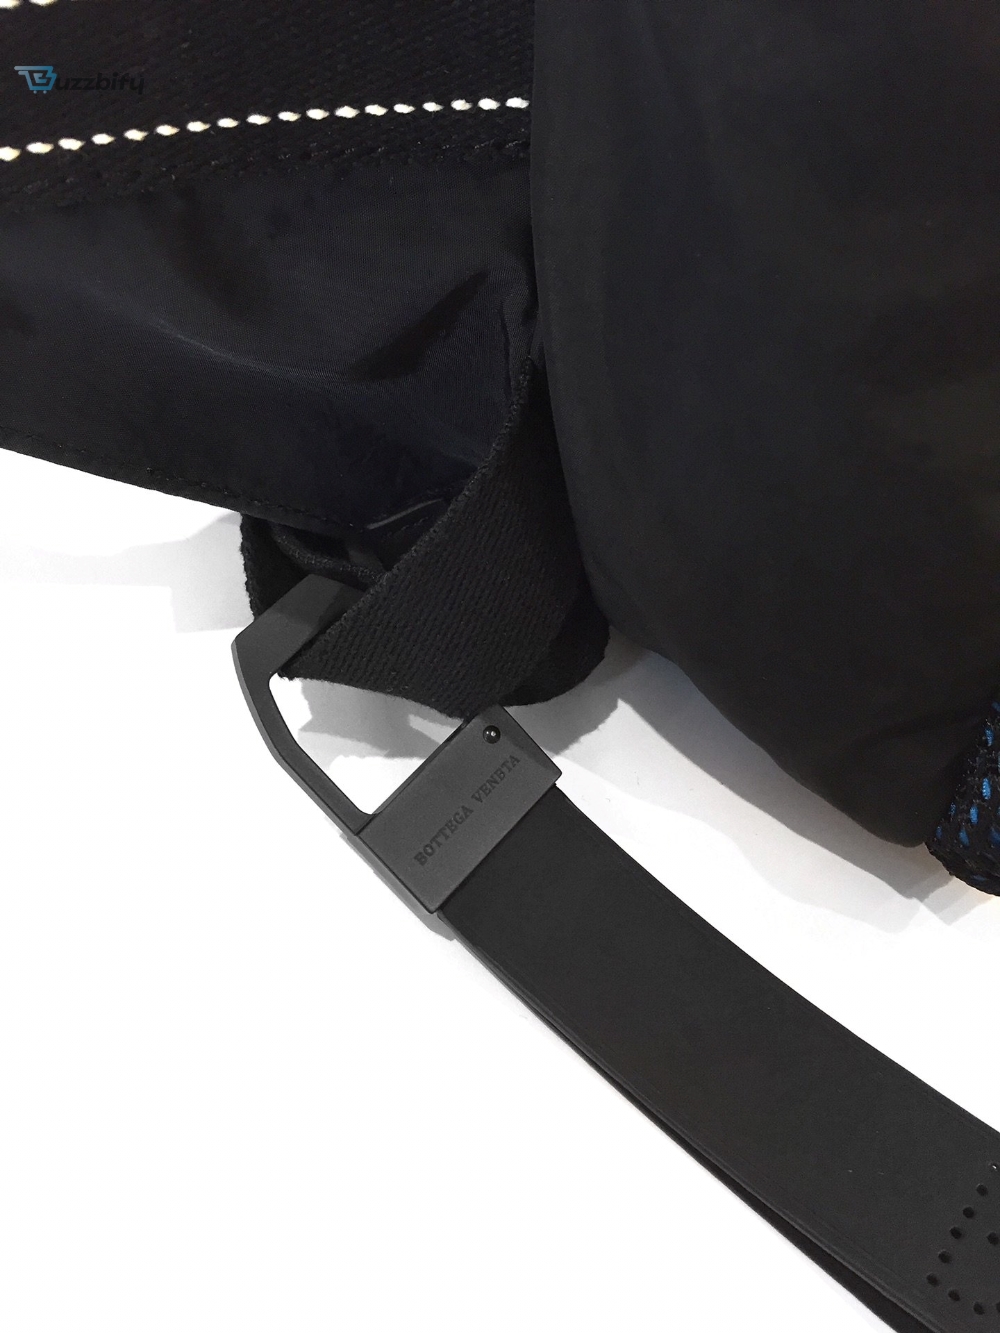 Bottega Veneta Crossbody Bag Blue, For Men, Men�s Bags 9.8in/25cm 